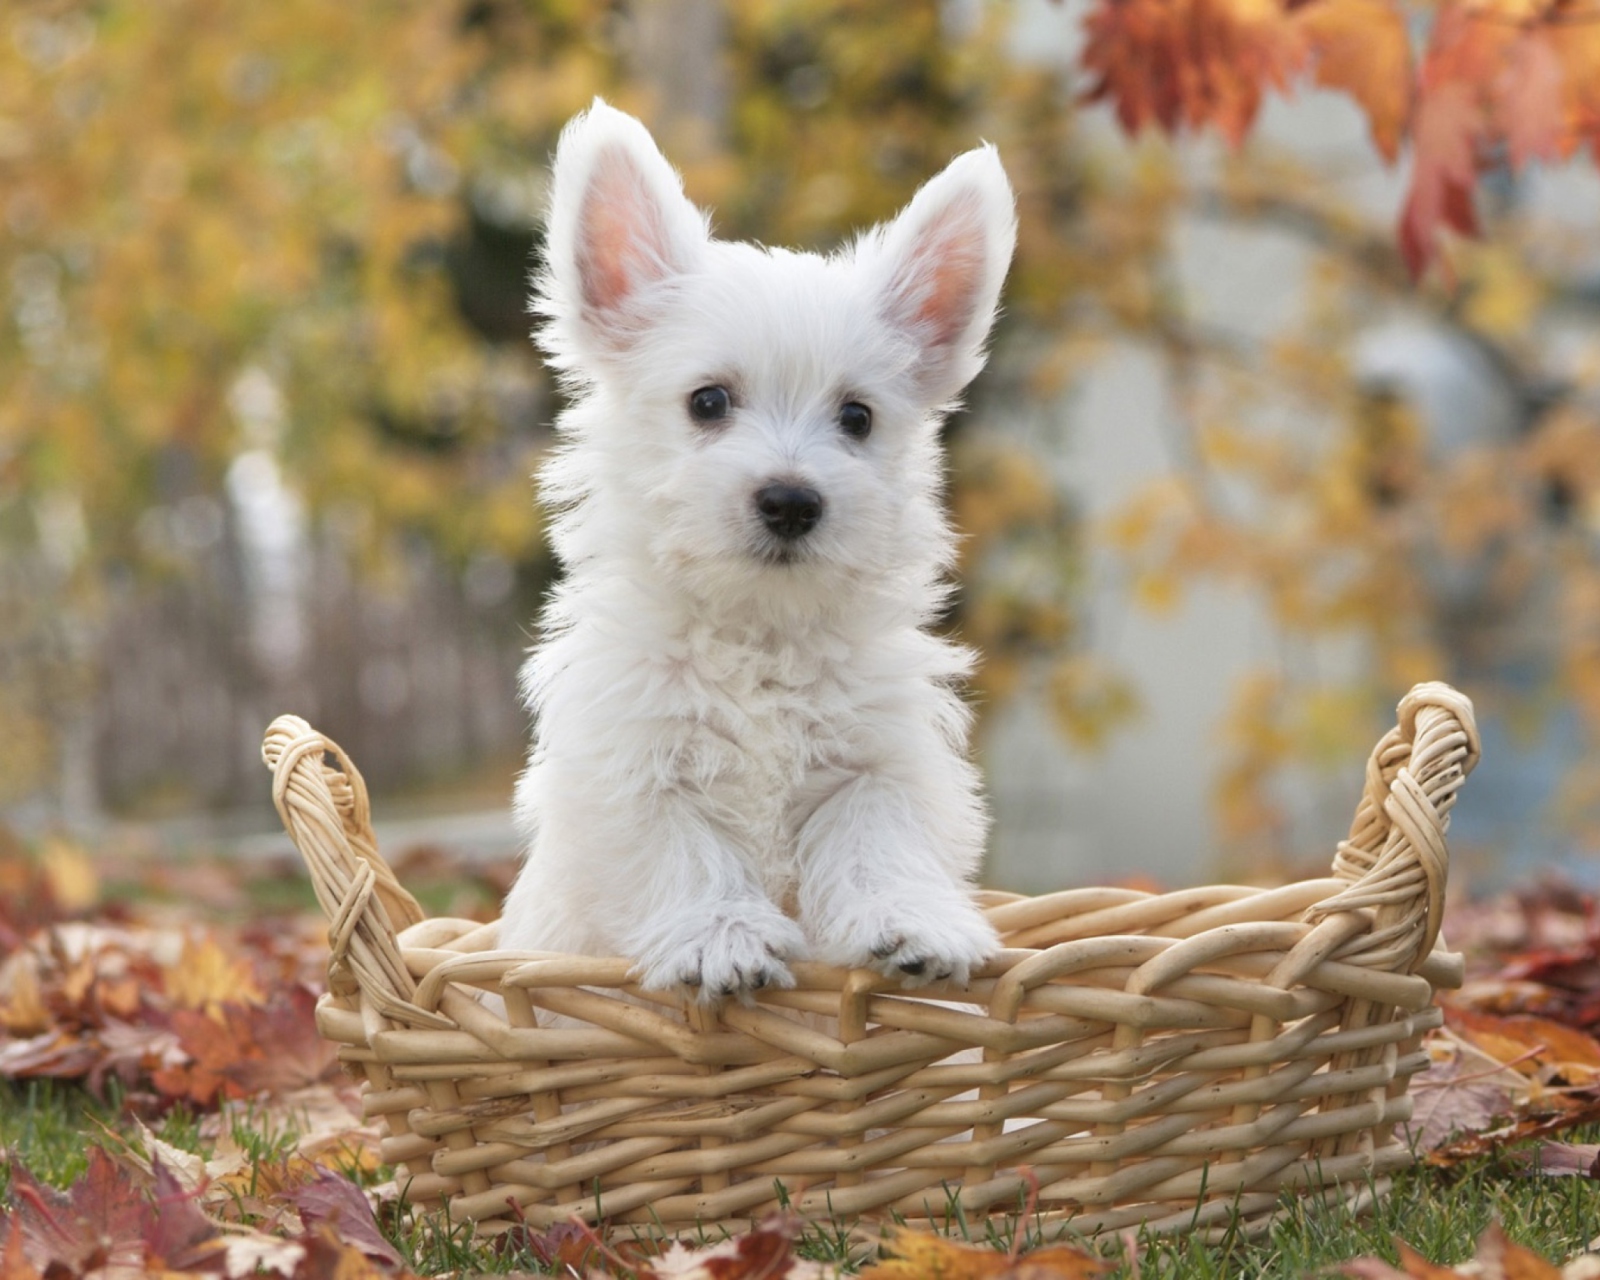 Cute Doggy In Basket wallpaper 1600x1280